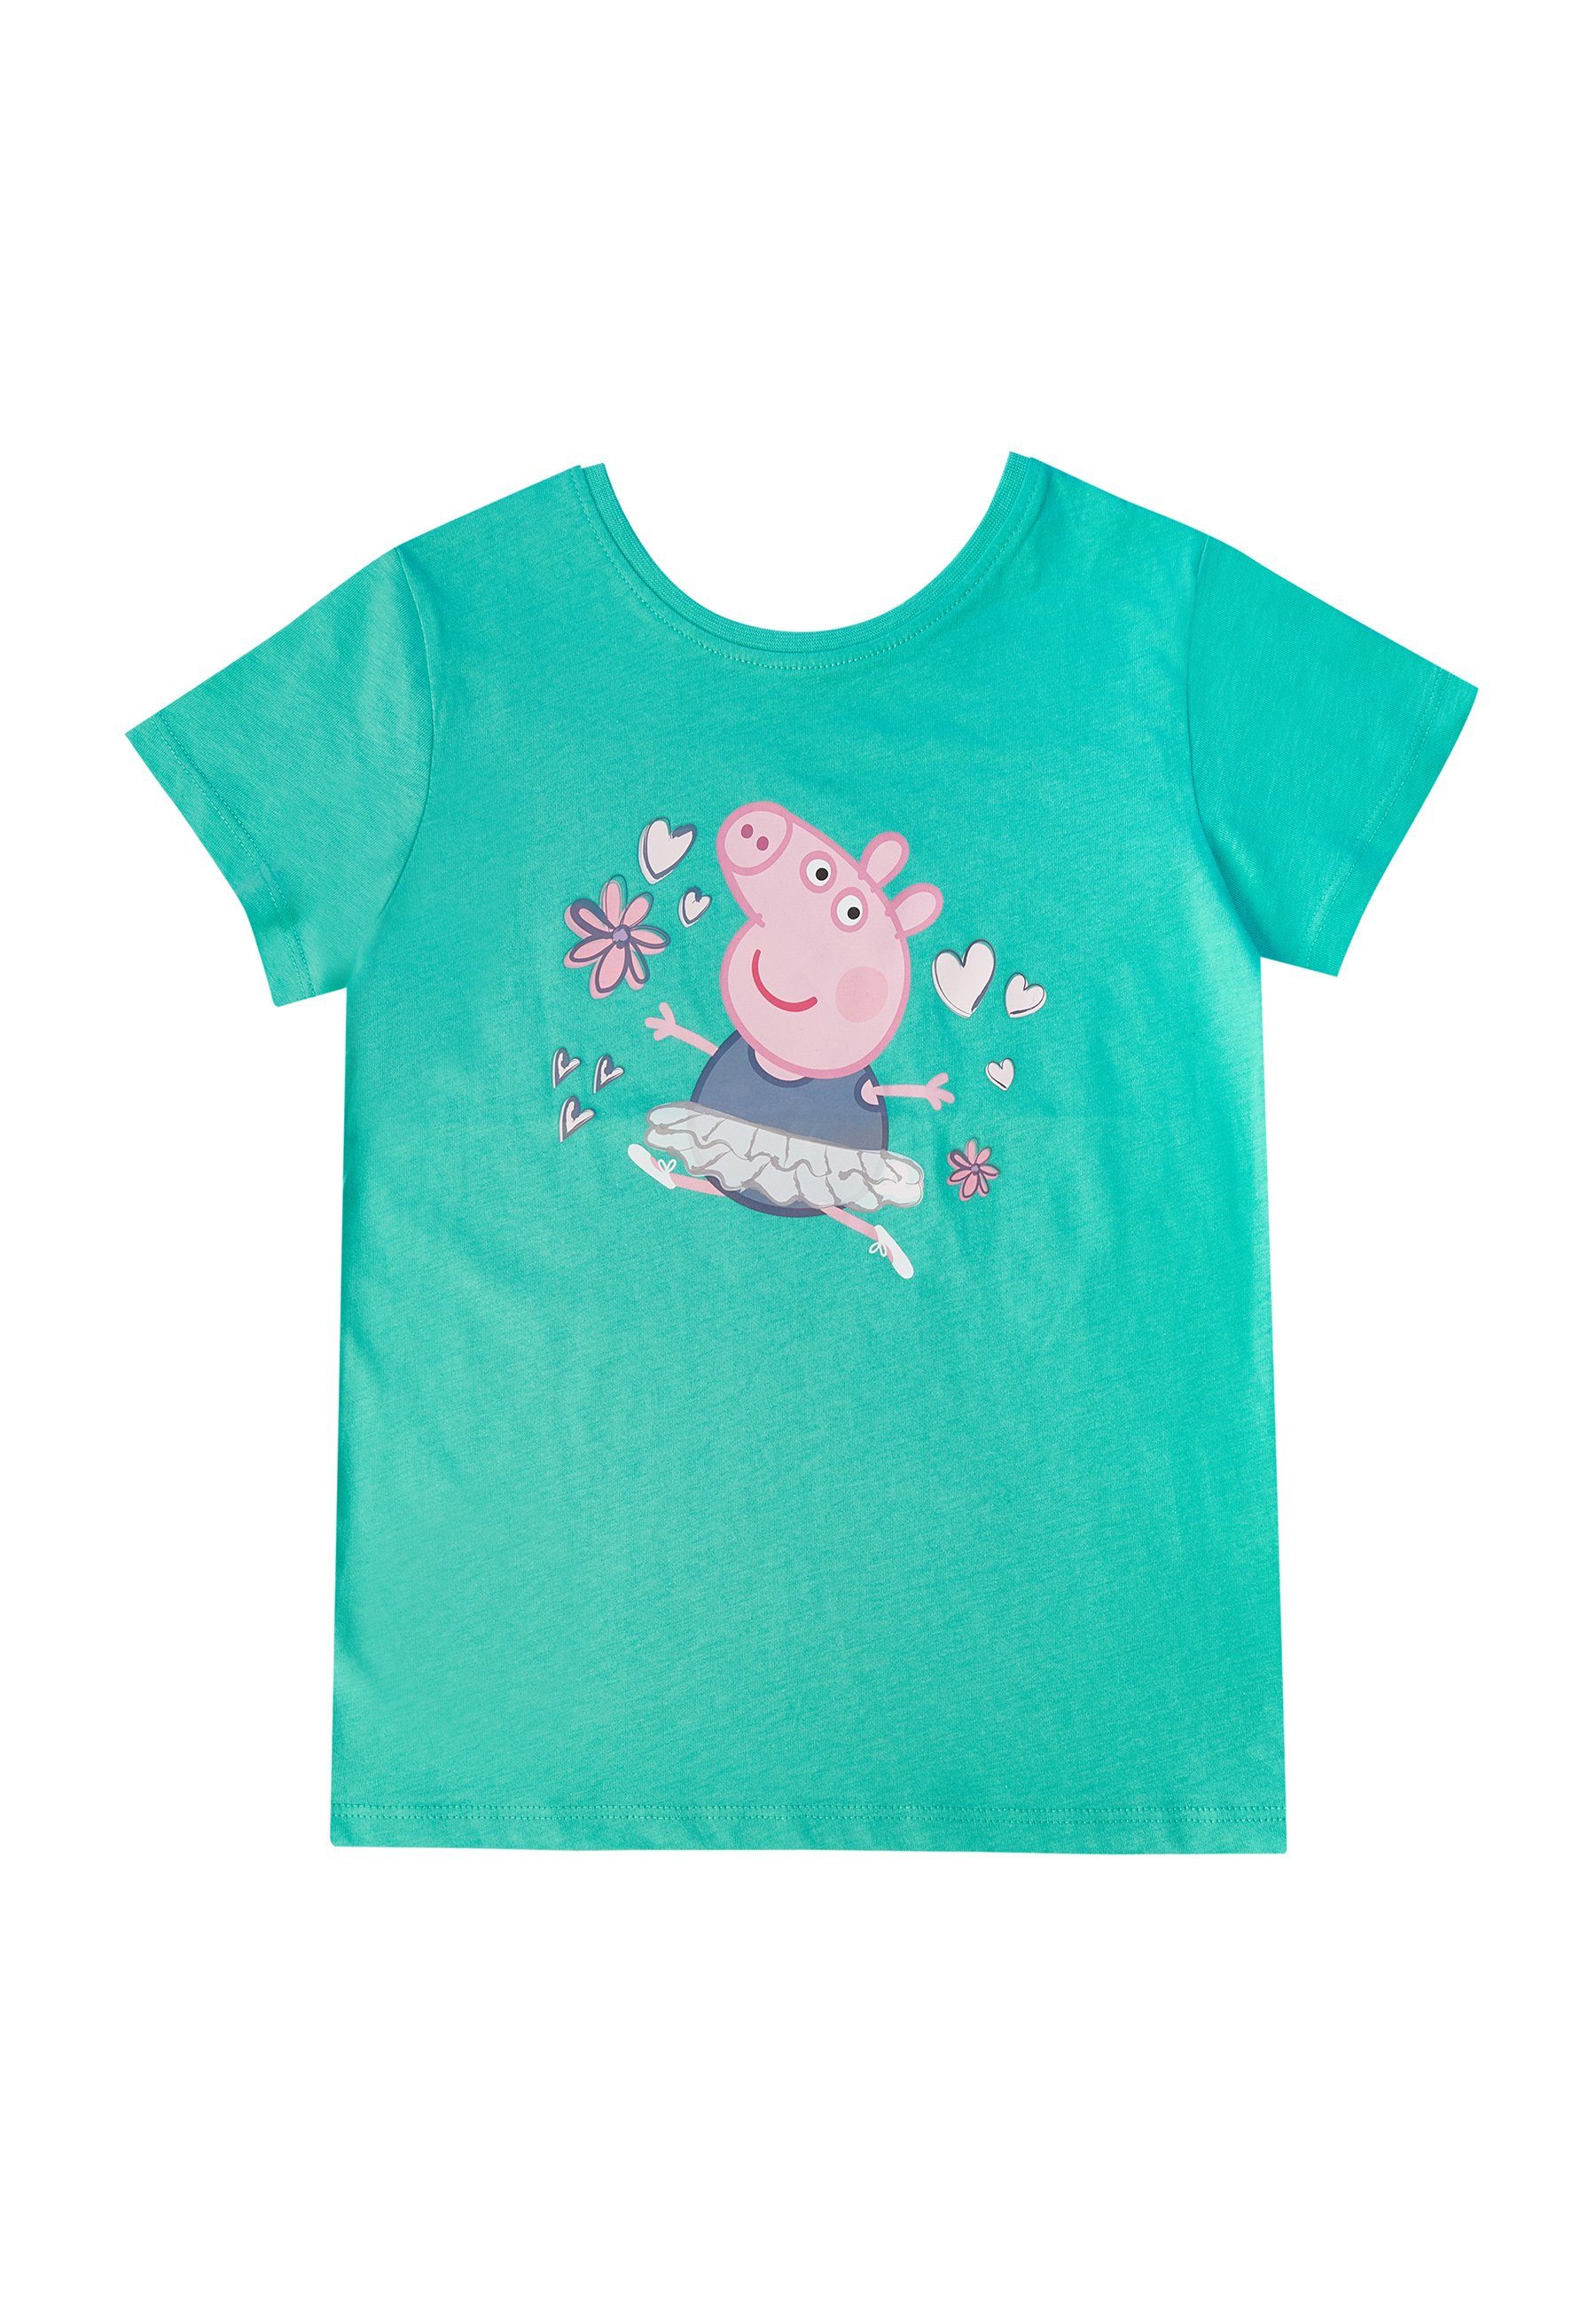 Peppa Pig T-Shirt »Peppa Wutz Kinder Mädchen Wende Shirt T-Shirt Oberteil  Top« online kaufen | OTTO